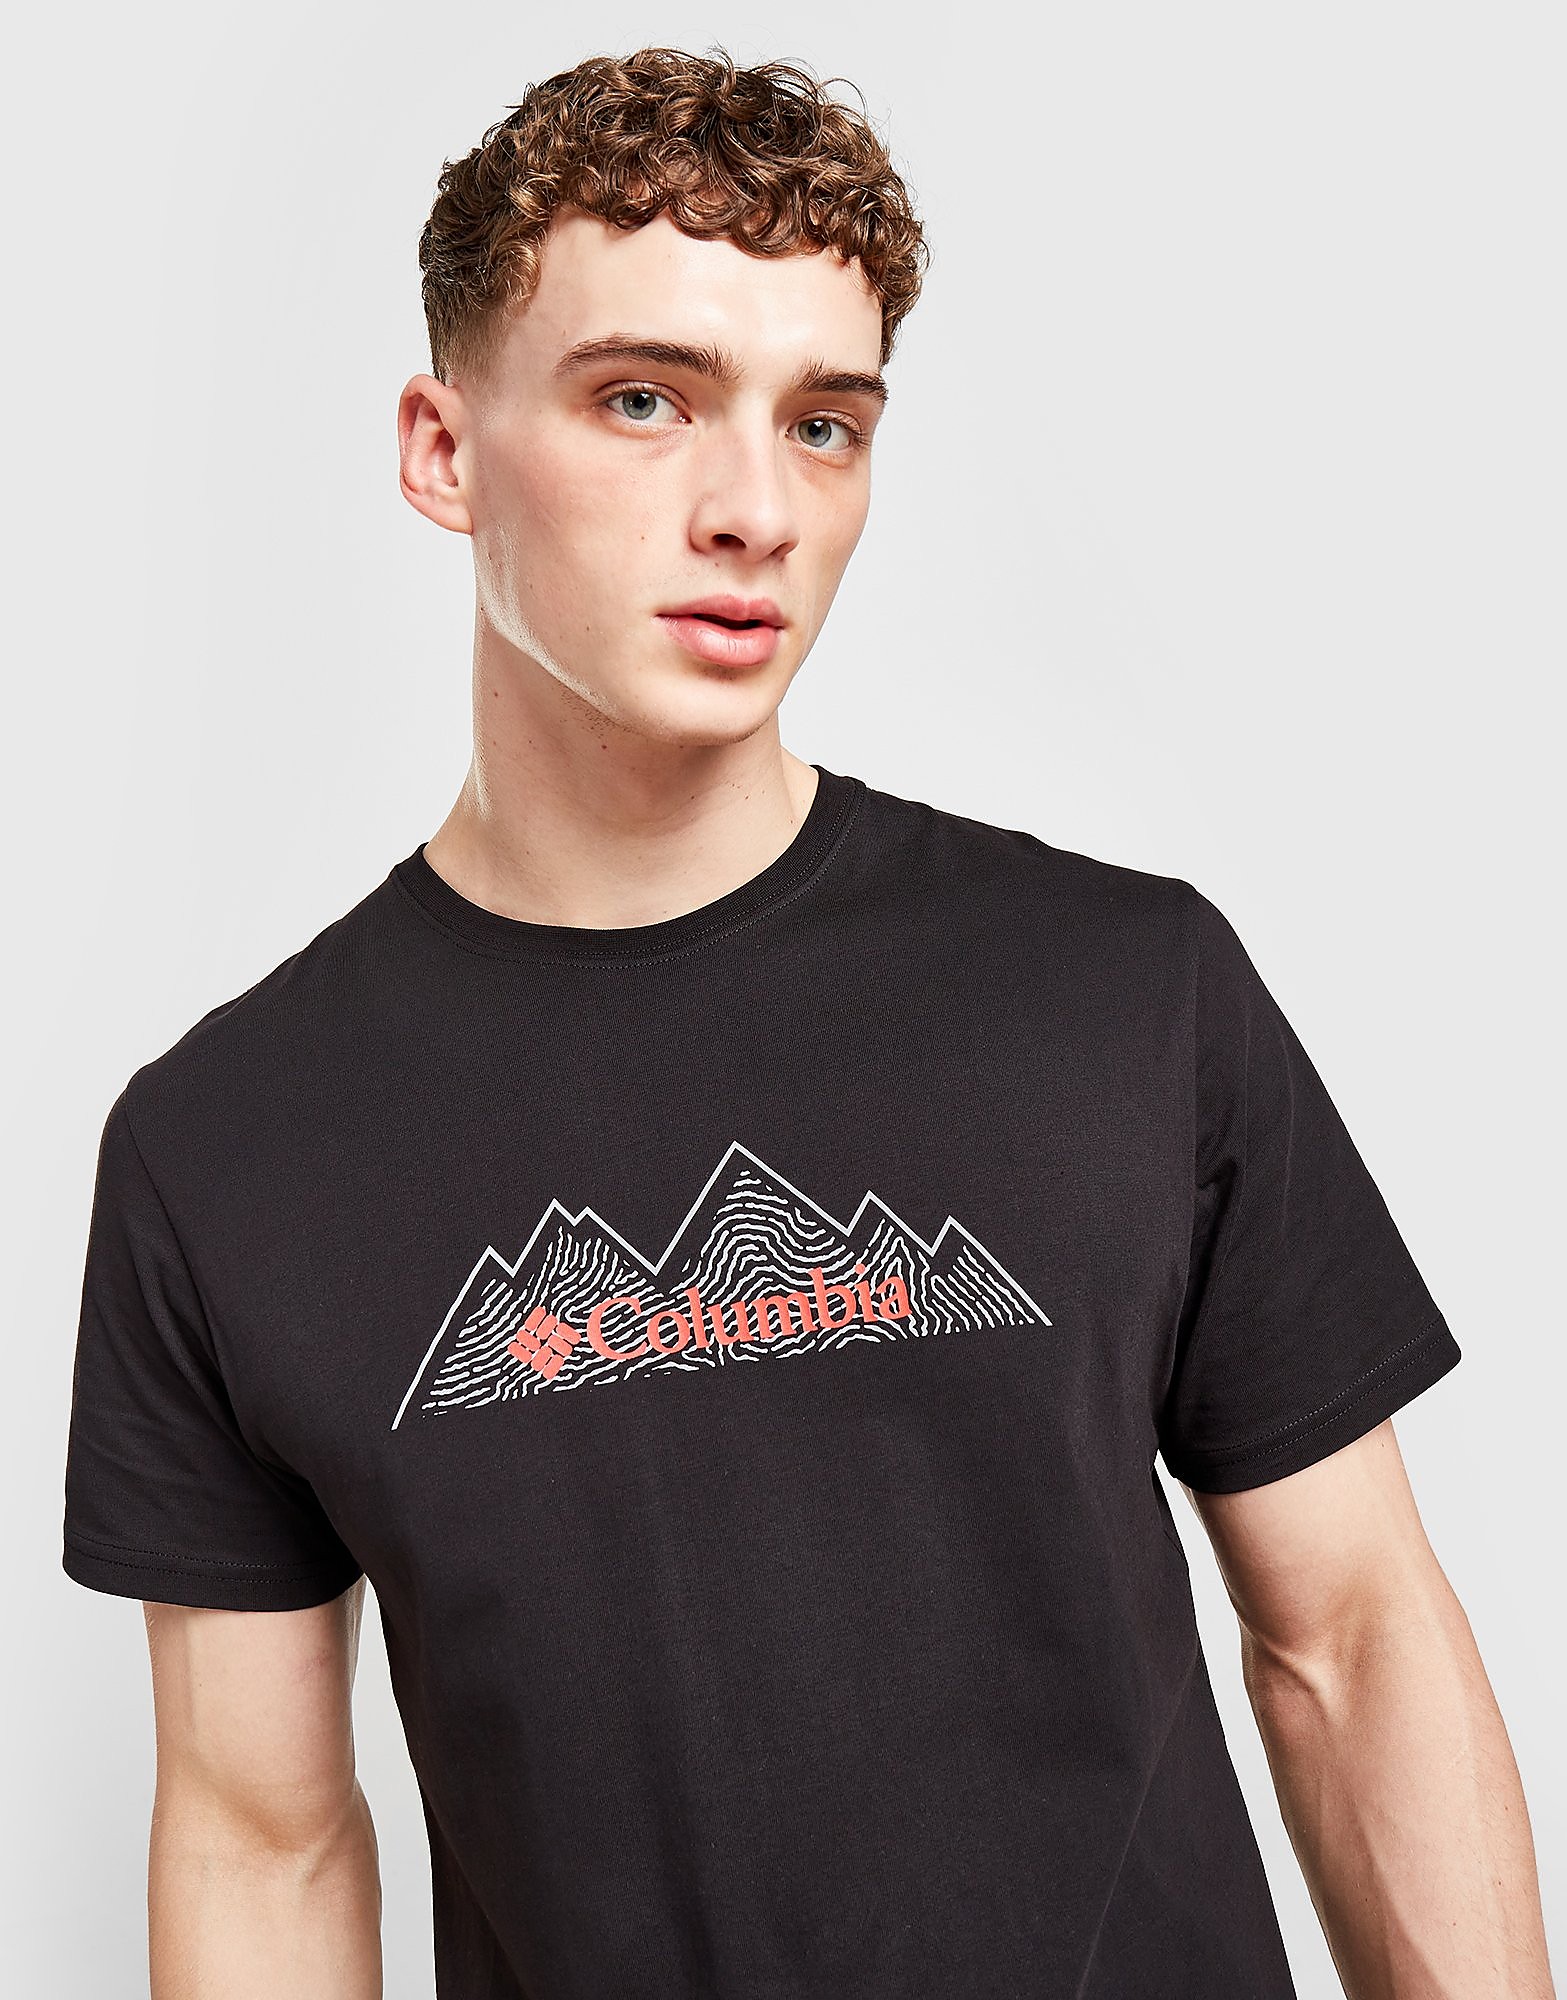 Columbia T-Shirt Scar Infill - Preto - Mens, Preto